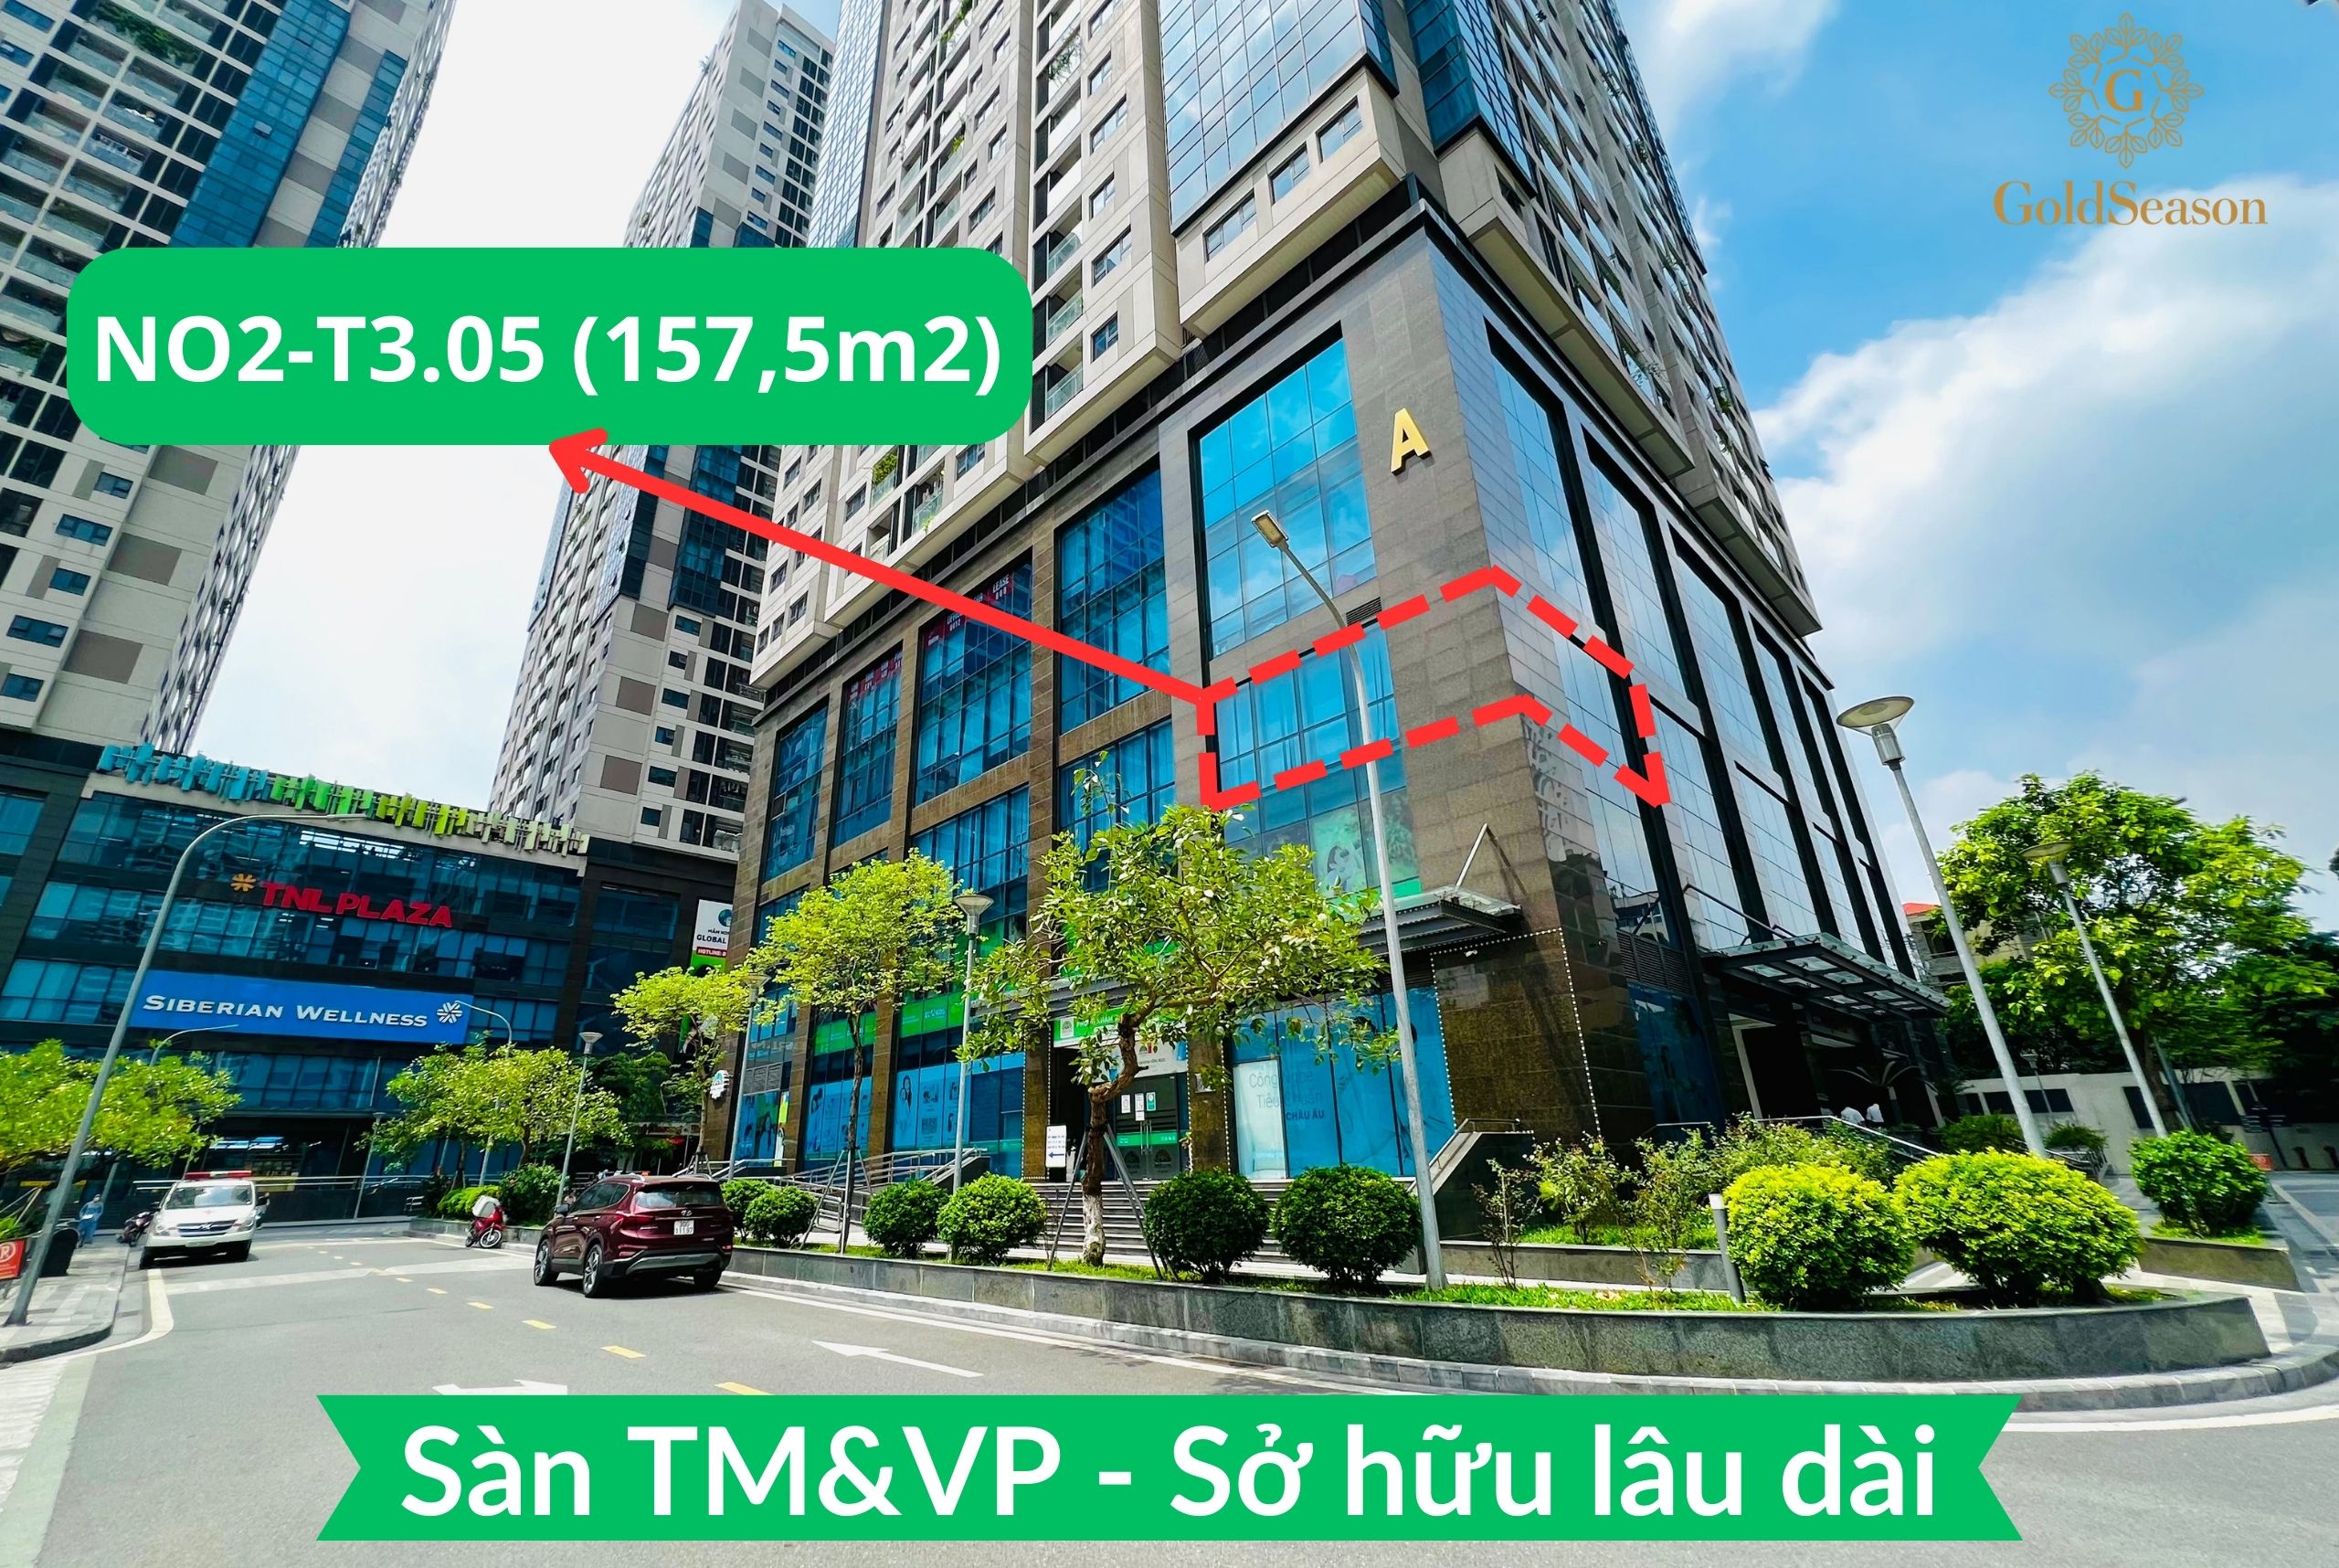 Trực tiếp CĐT bán lô góc sàn văn phòng 157,5m2 - Sở hữu lâu dài đỉnh nhất quận Thanh Xuân tiền thuê 470tr/năm 1